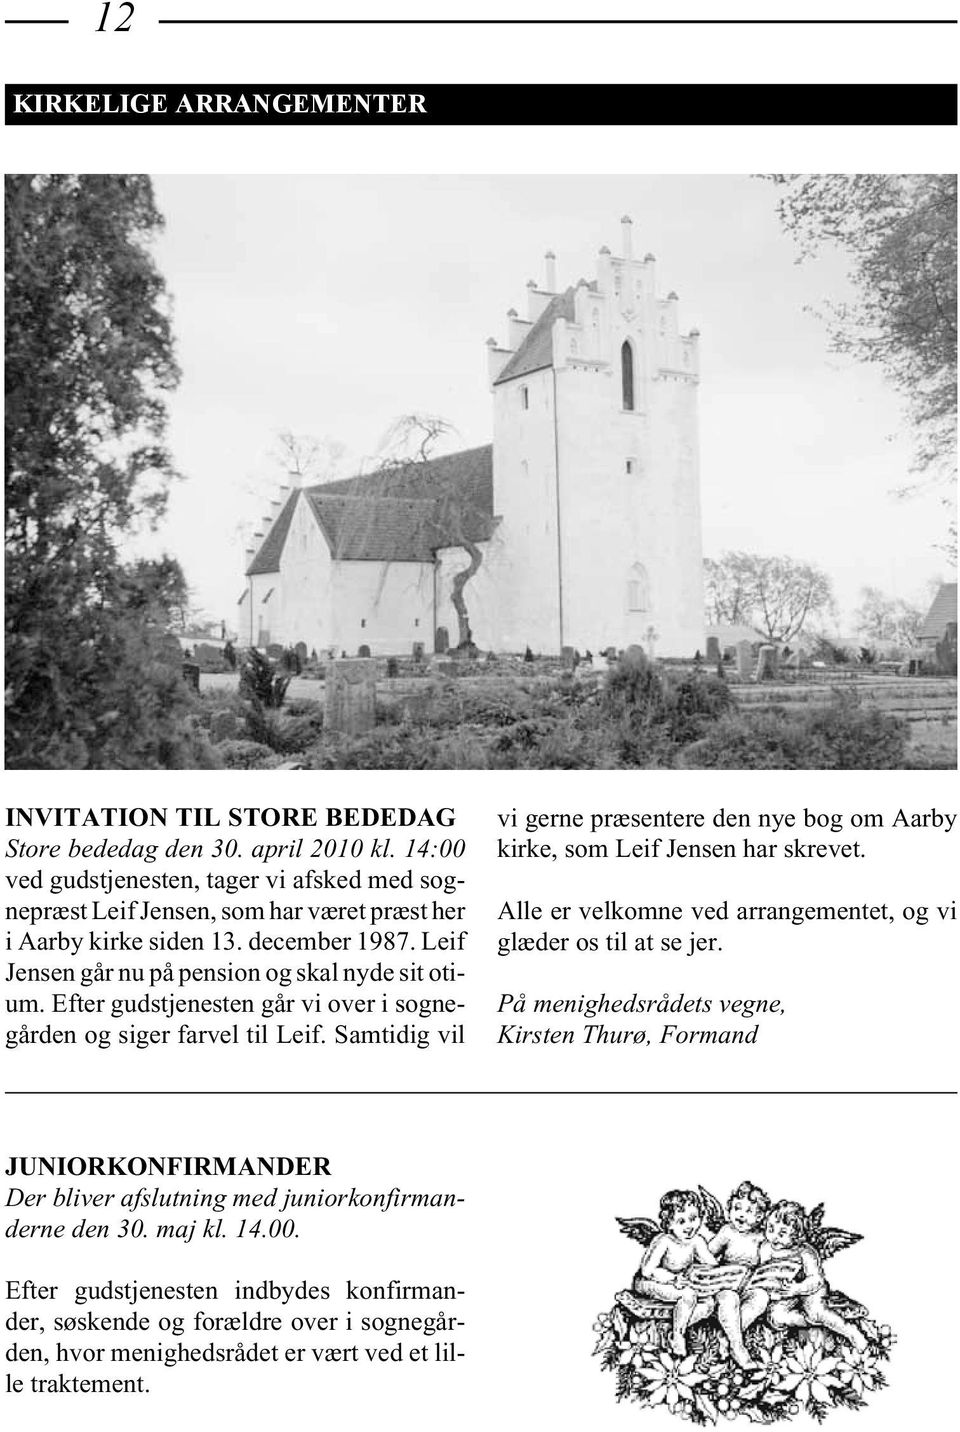 Efter gudstjenesten går vi over i sognegården og siger farvel til Leif. Samtidig vil vi gerne præsentere den nye bog om Aarby kirke, som Leif Jensen har skrevet.